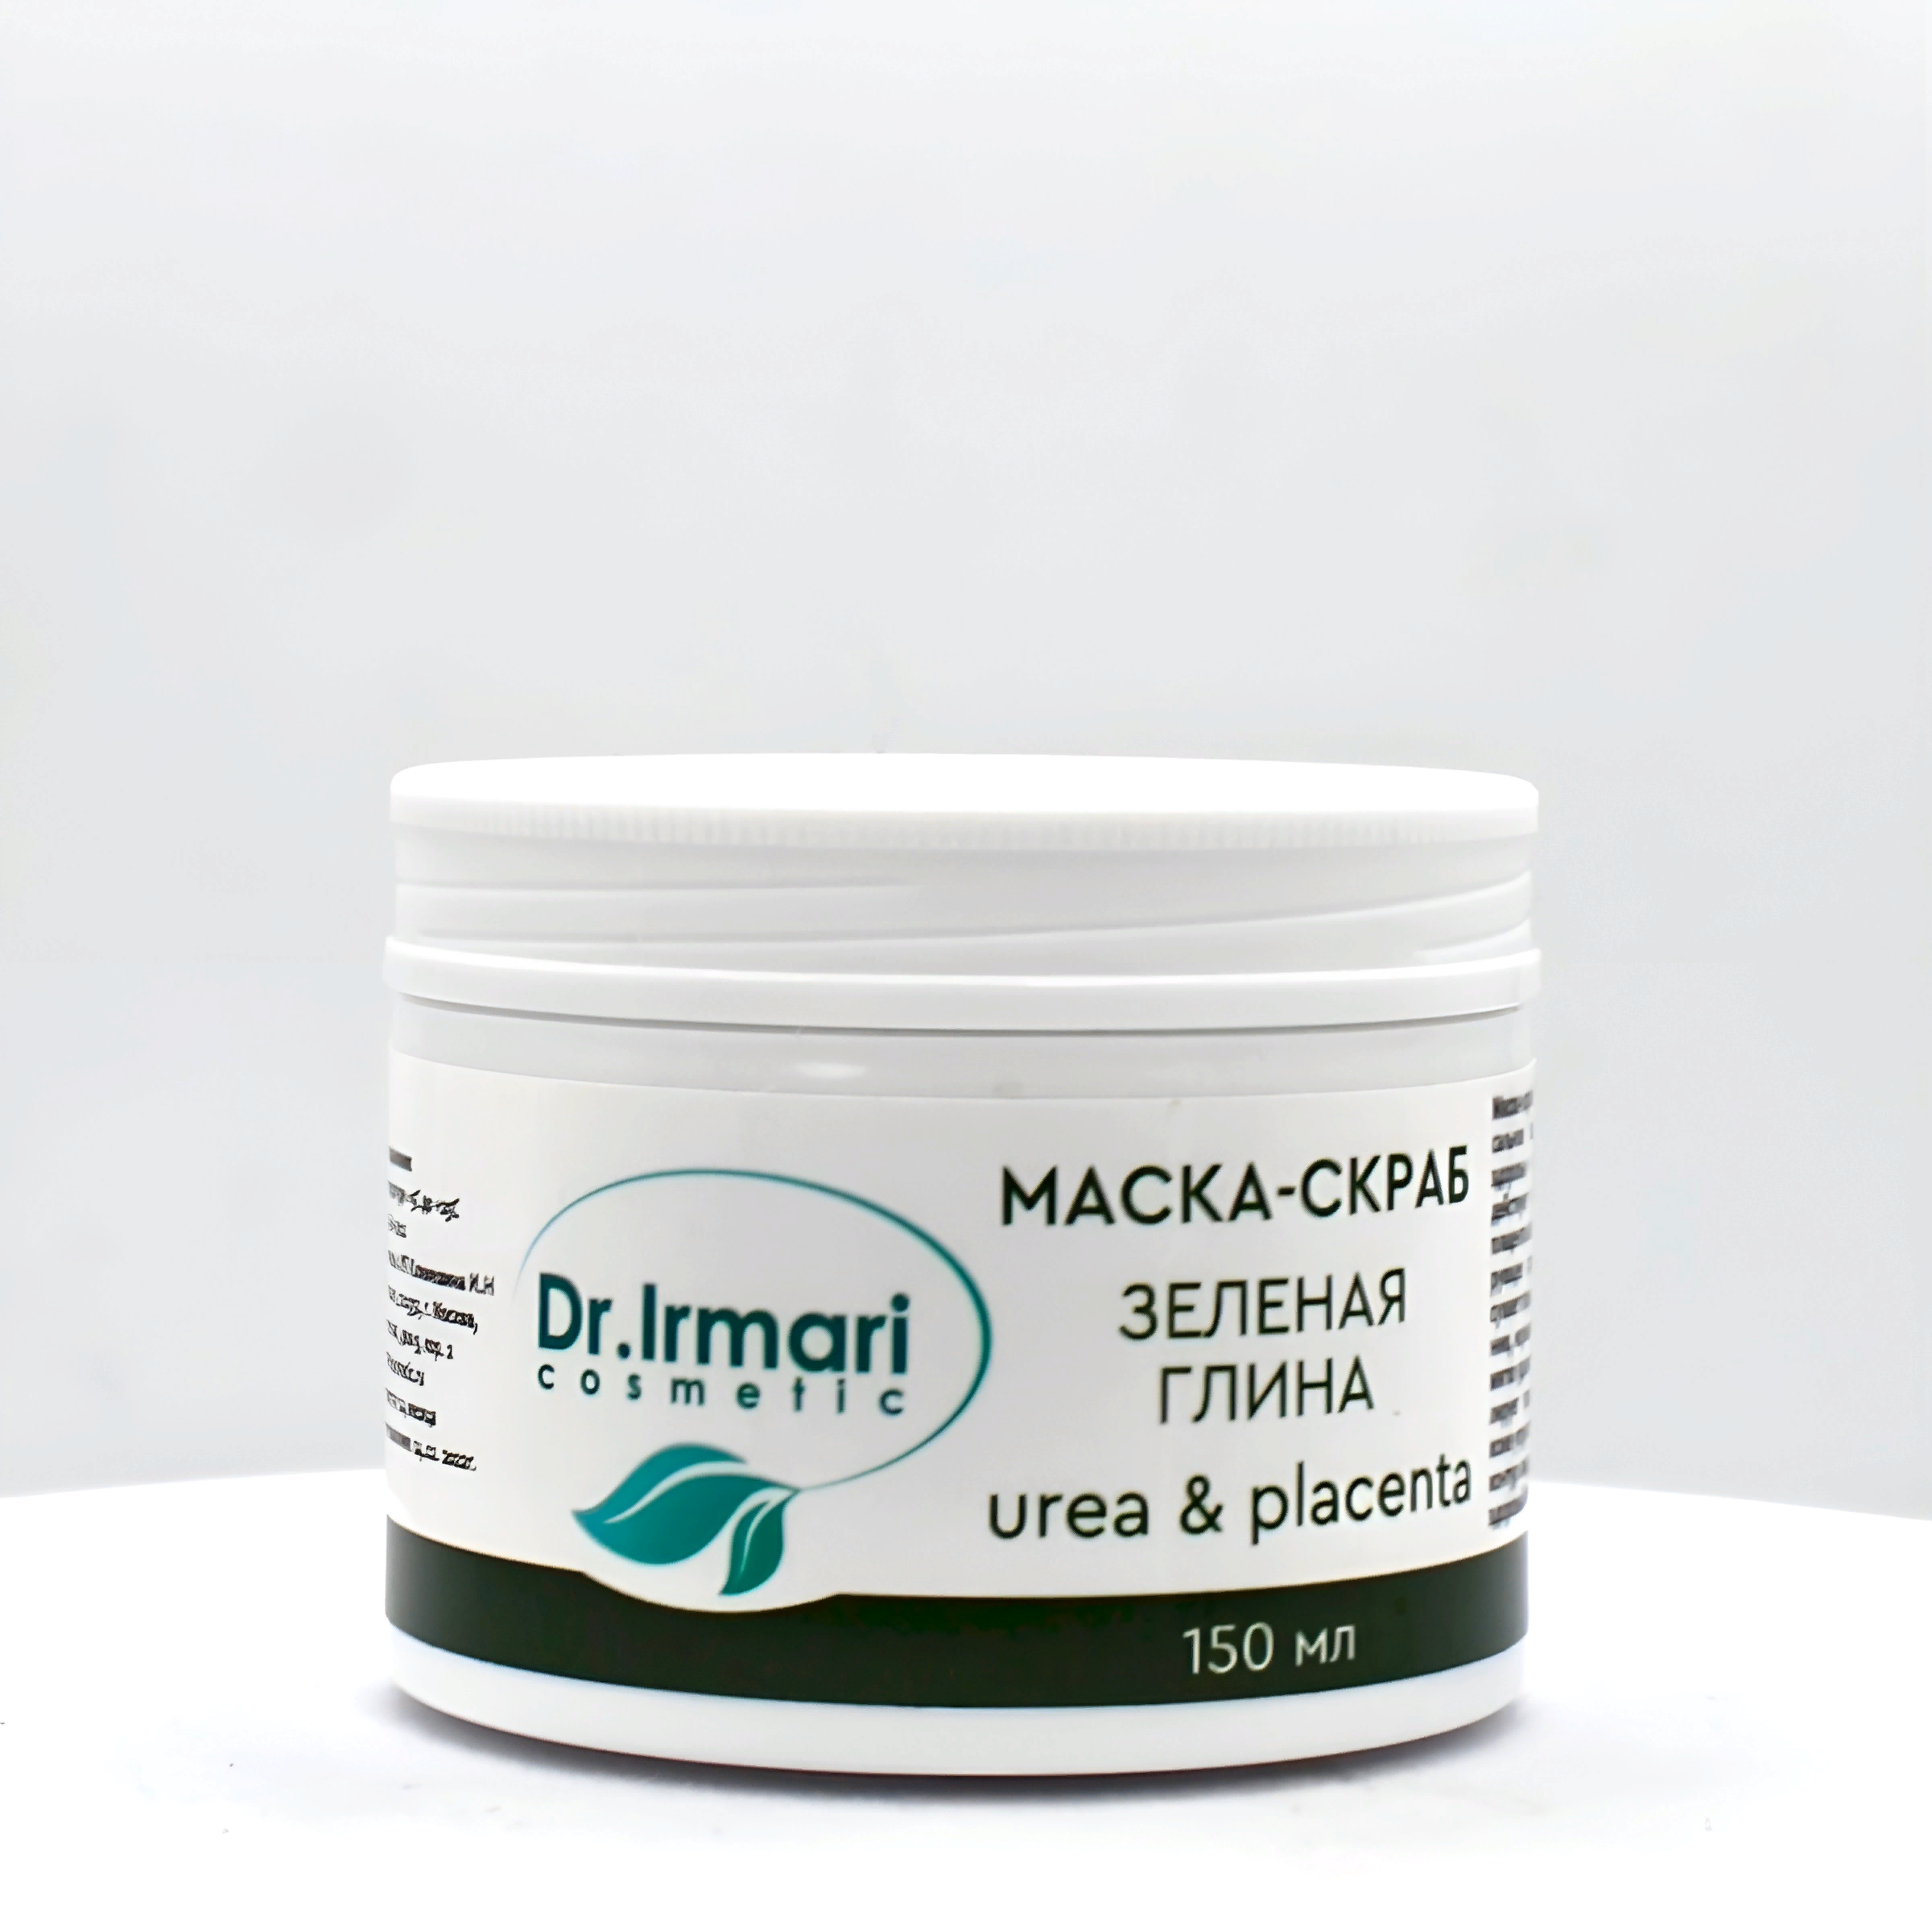 Маска-скраб Dr.Irmari cosmetic Urea & Placenta Зелёная глина 150 мл маска для лица novosvit pore correct для т зоны вулканическая глина zinc pca 40мл